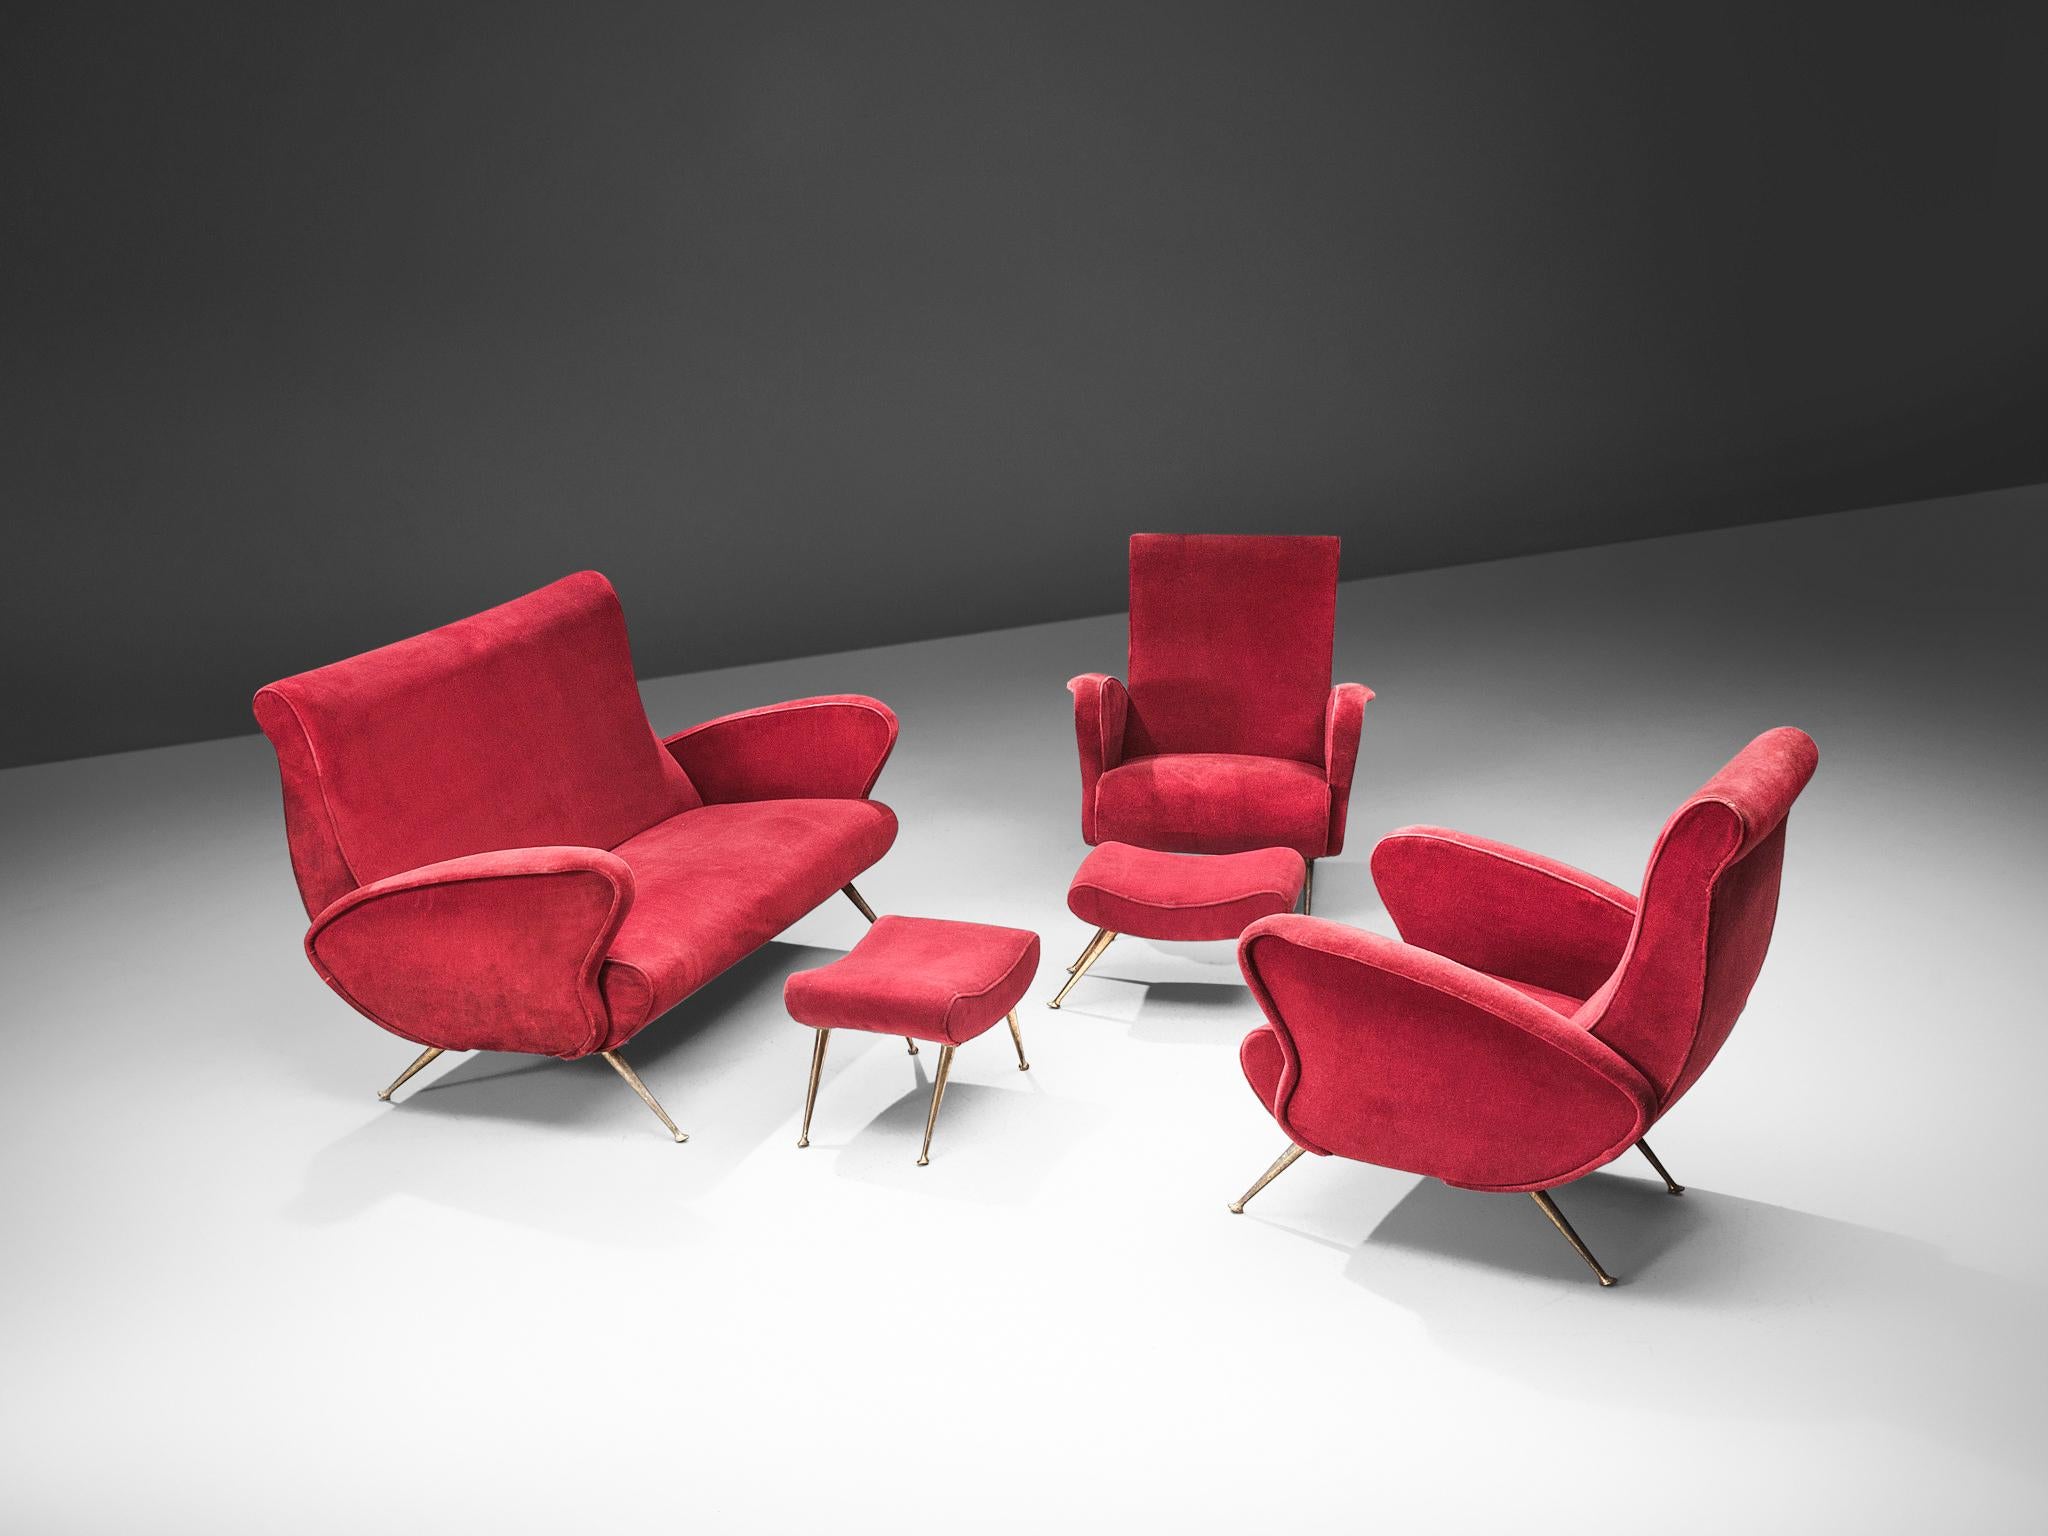 Lounge-Set, roter Samt, Messing, Italien, 1950er Jahre.

Dieses Set ist ein ikonisches Beispiel für italienisches Design aus den fünfziger Jahren. Das organische und skulpturale Zweisitzer-Sofa und die zwei dazu passenden Lounge-Sessel mit Ottomane